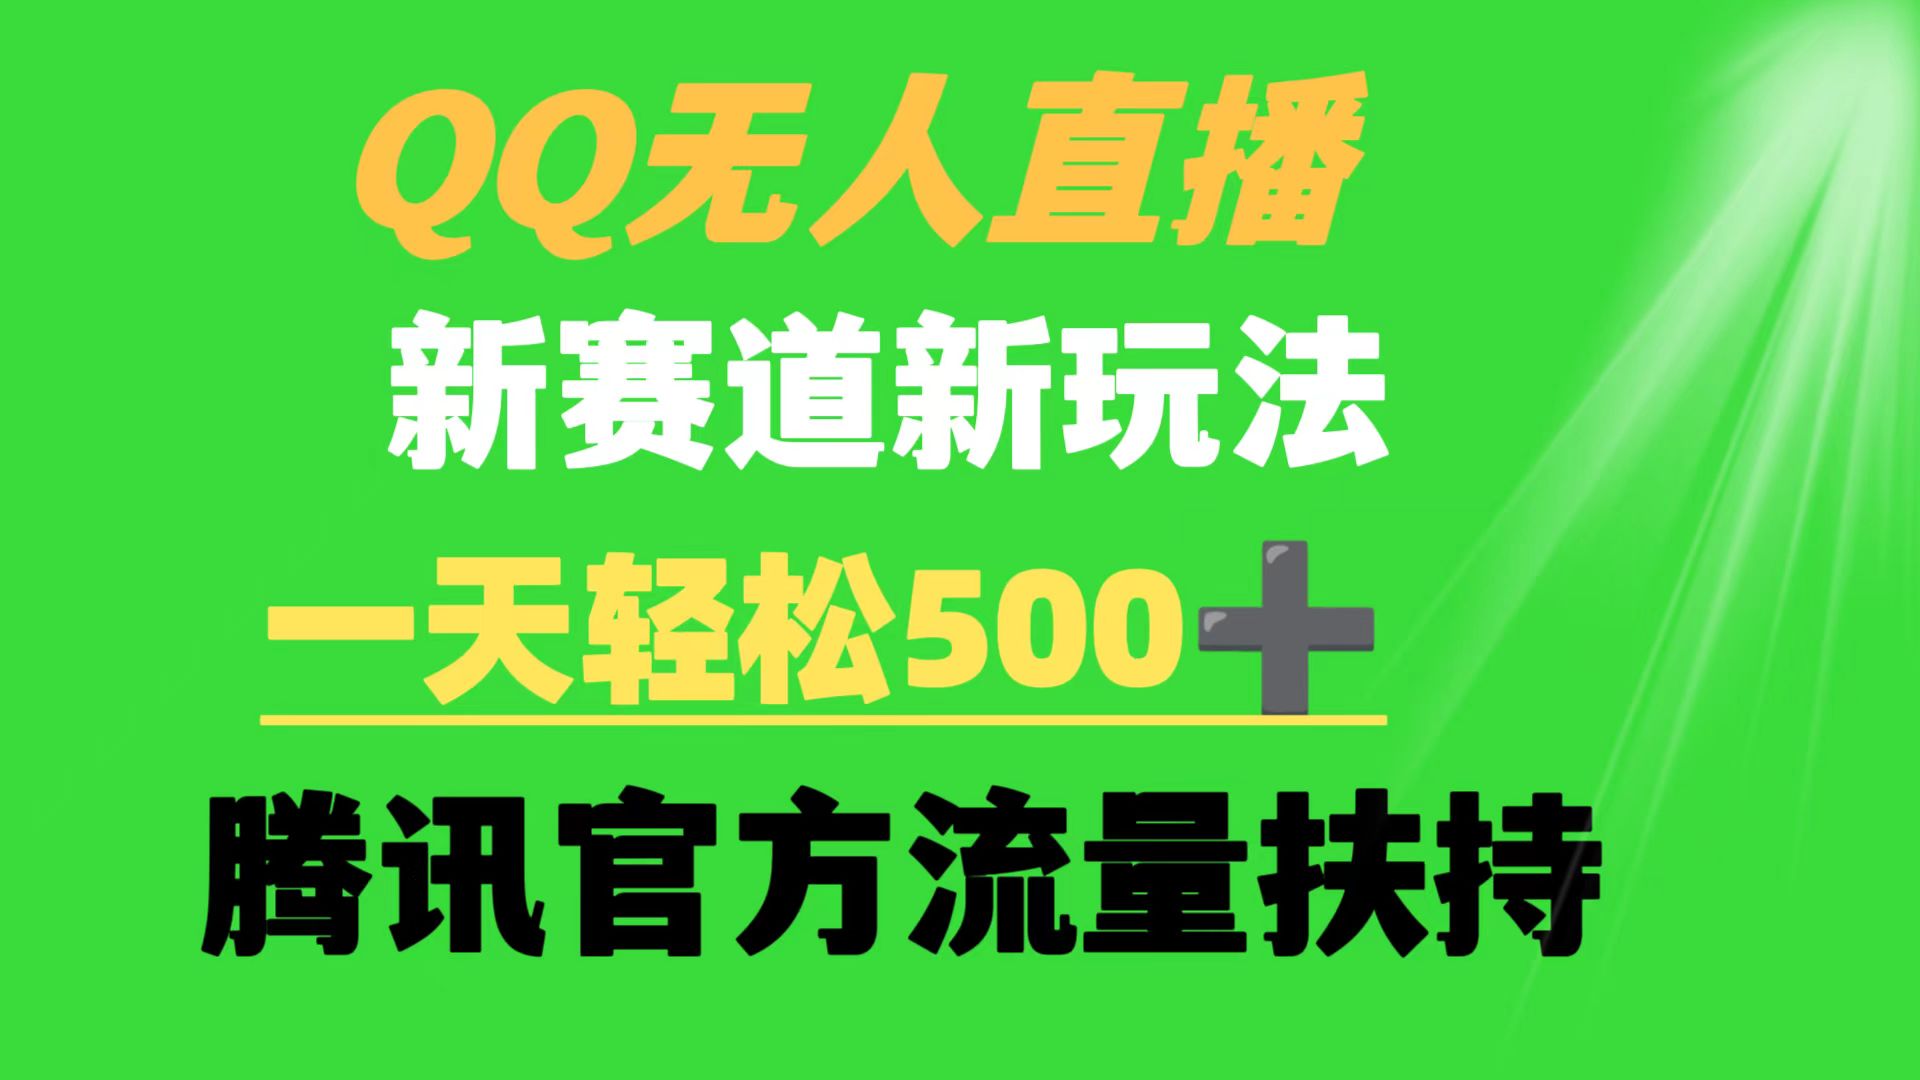 (9261期)QQ无人直播 新赛道新玩法 一天轻松500+ 腾讯官方流量扶持